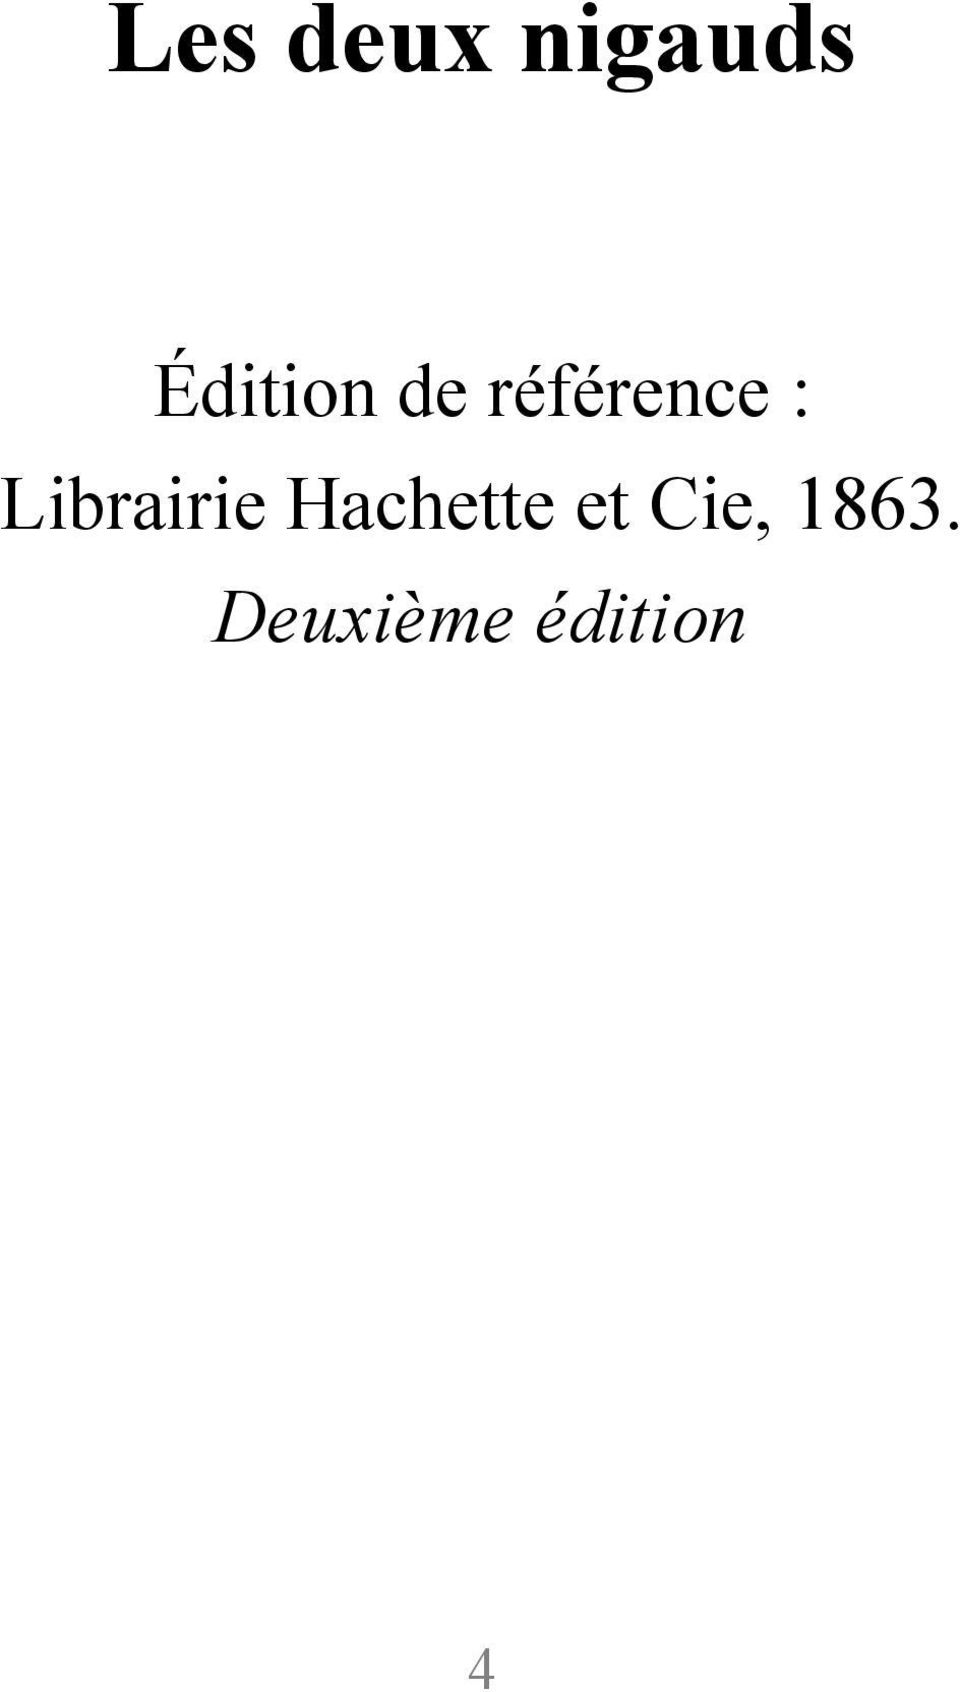 Librairie Hachette et